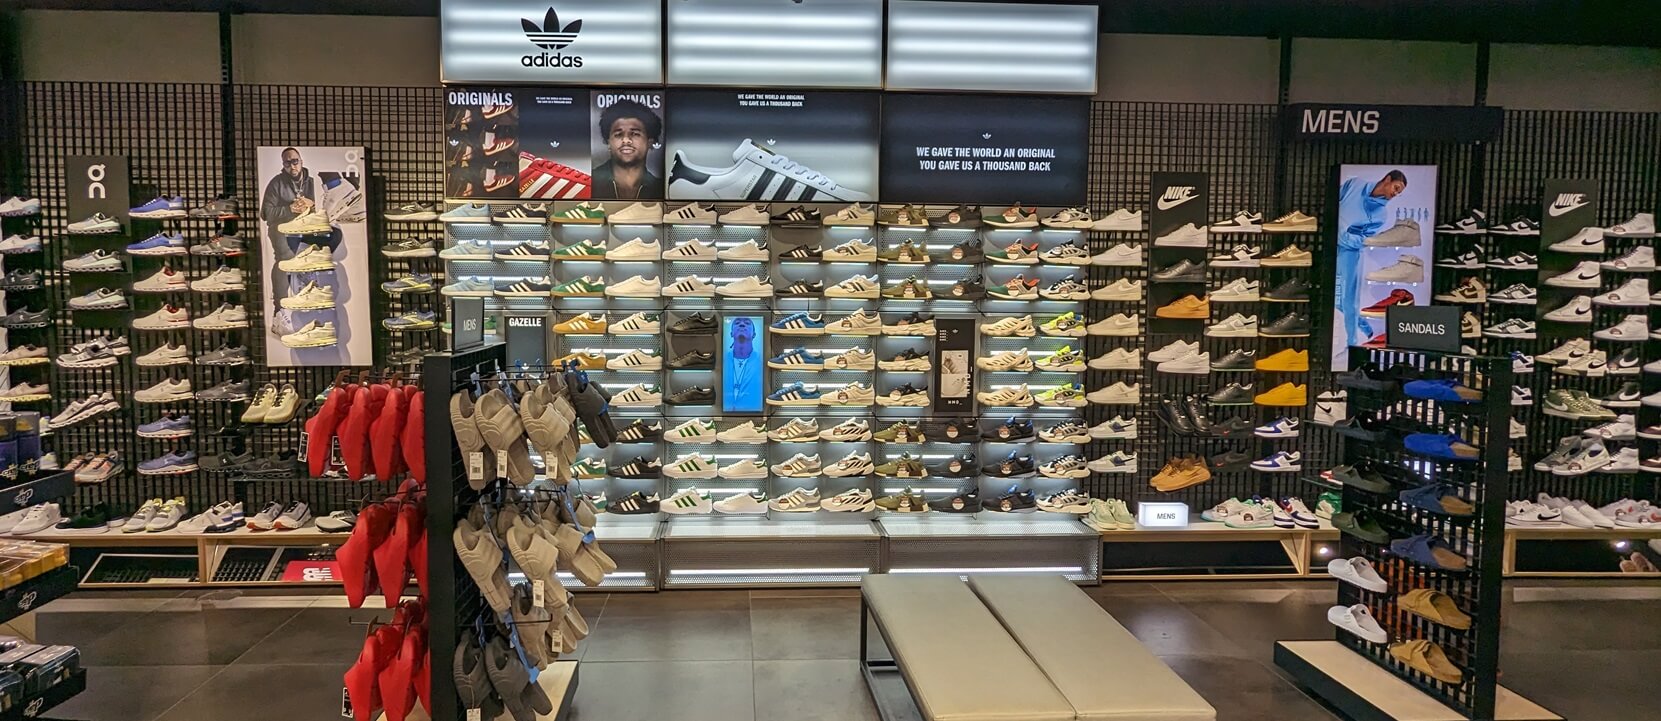 adidas originals showroom near me